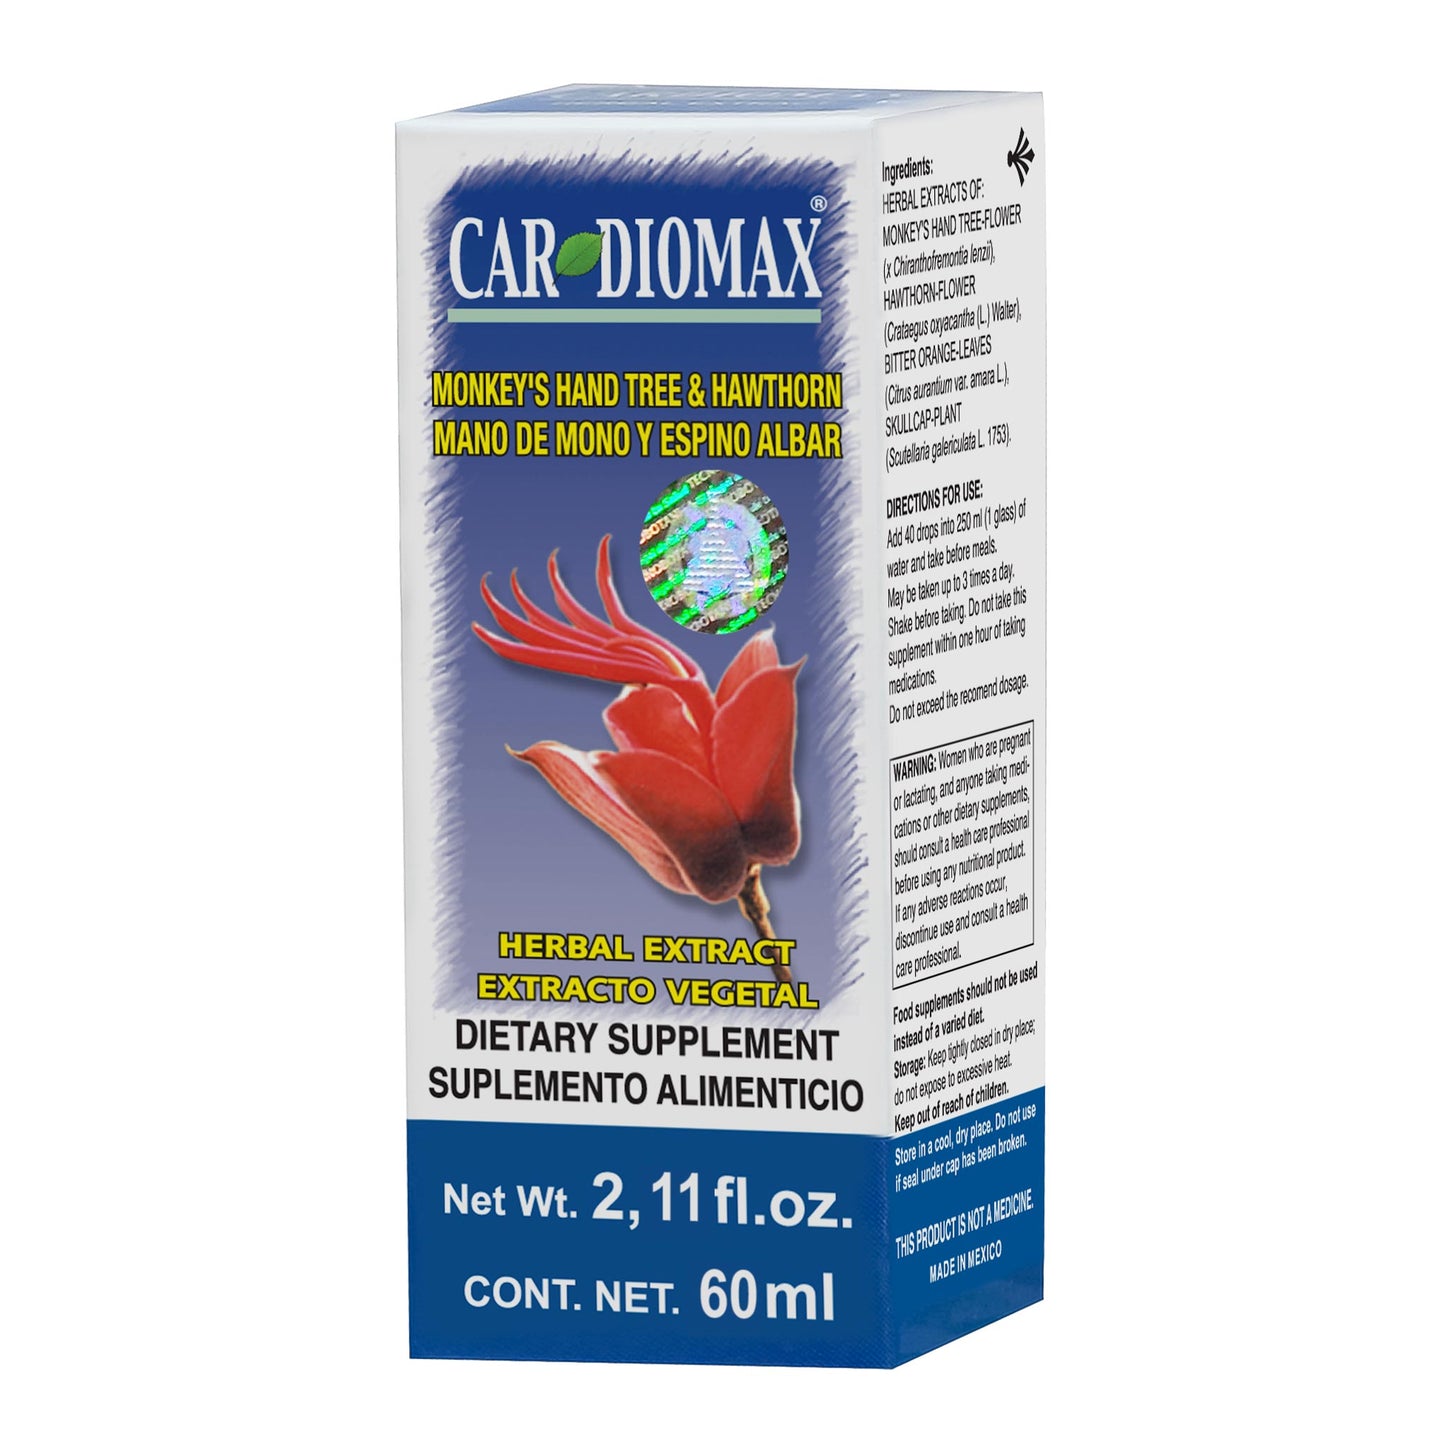 CARDIOMAX ® extracto vegetal 60ml